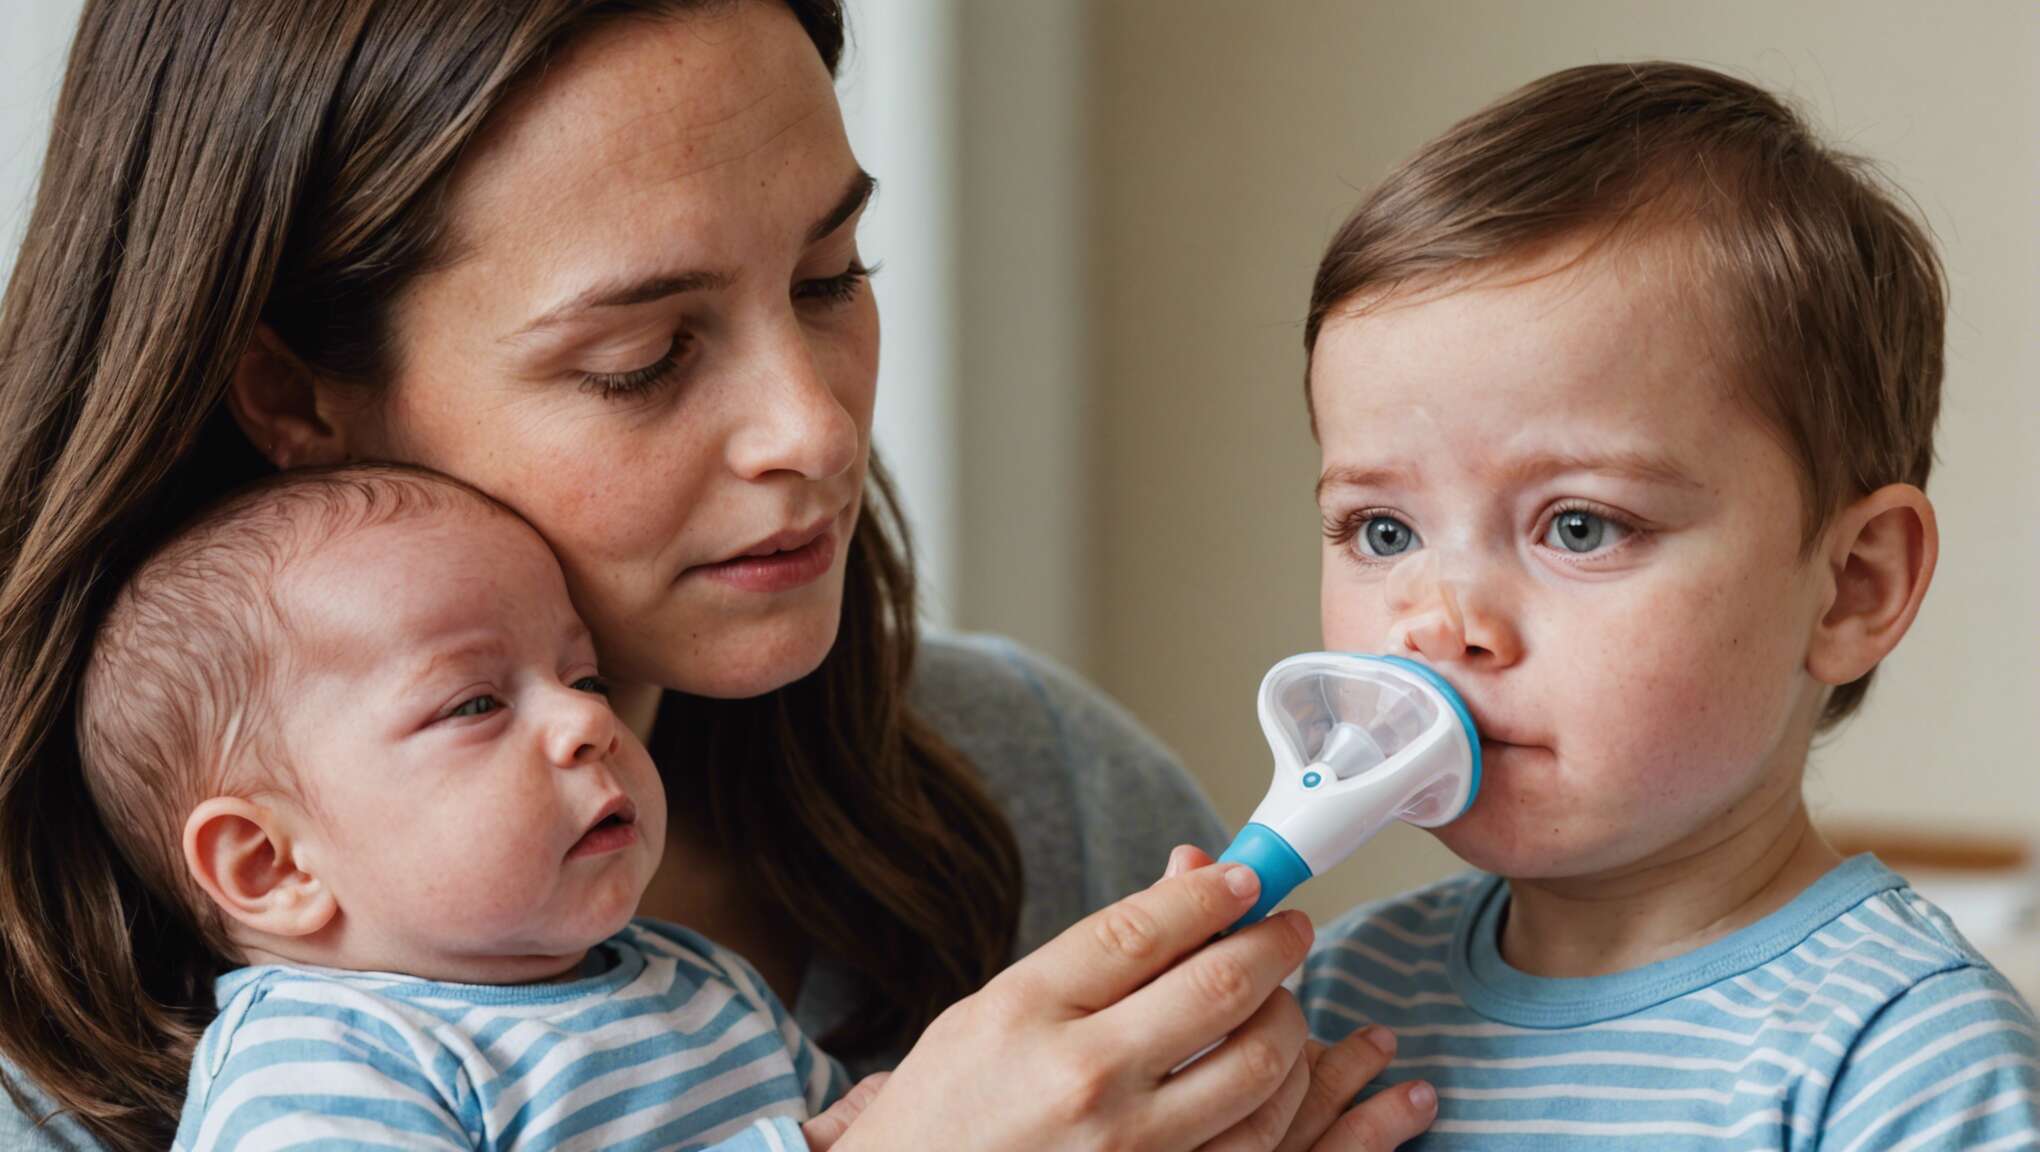 Critères de choix et recommandations pour un aspirateur nasal adapté aux besoins de bébé